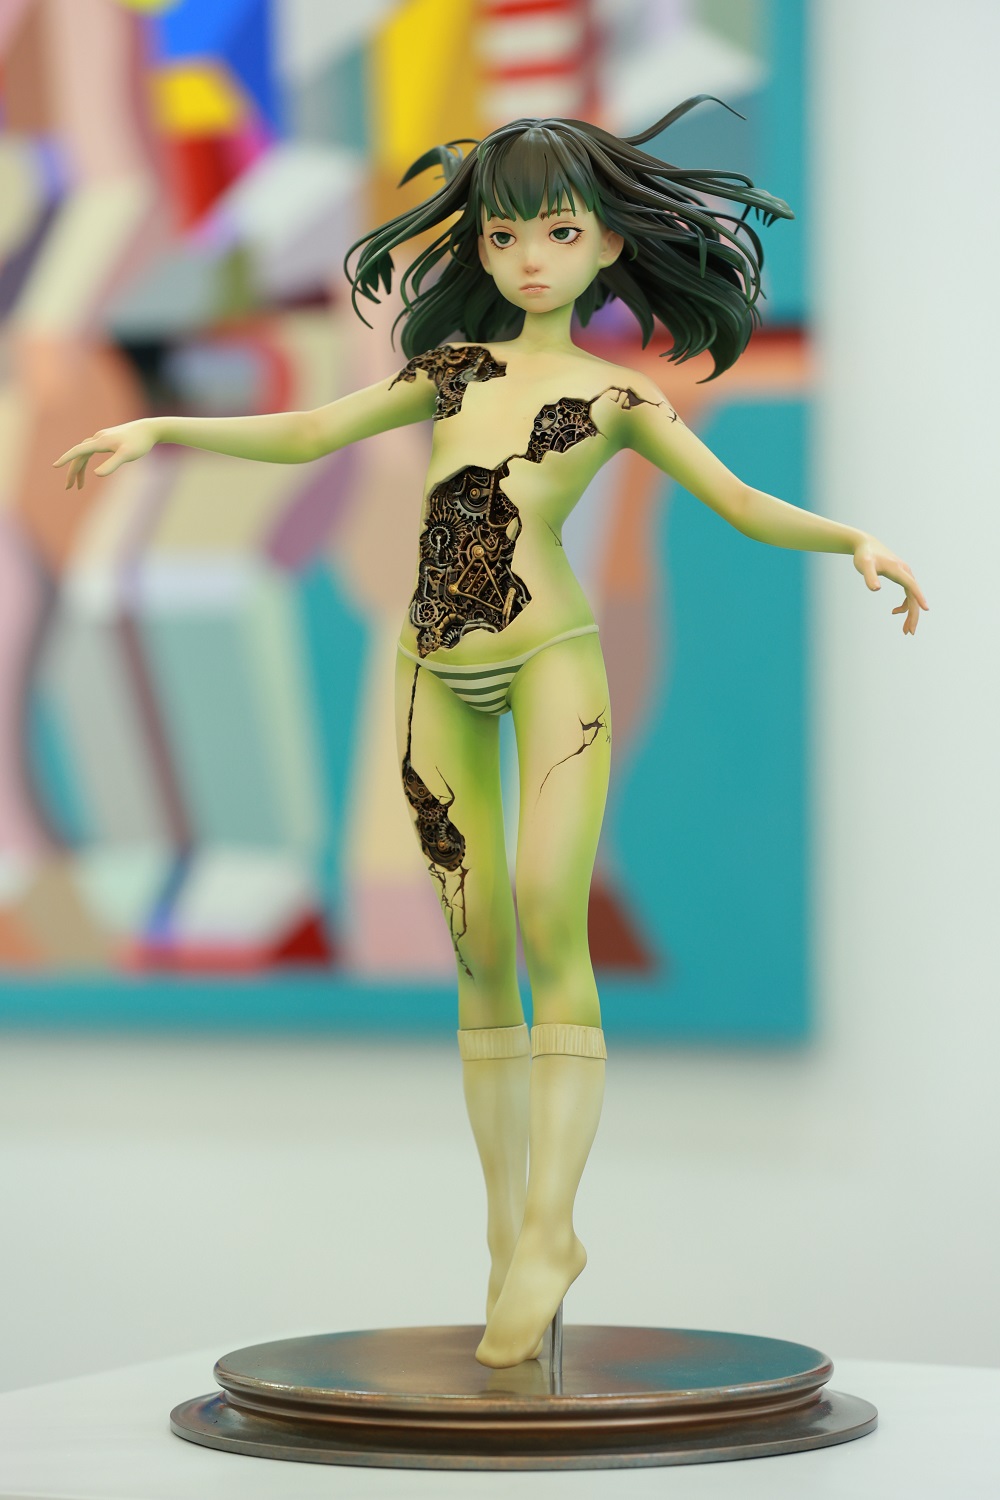 陈嫣冉（Chloe Chen）雕塑作品《旋转女孩SPINNING GIRL》 